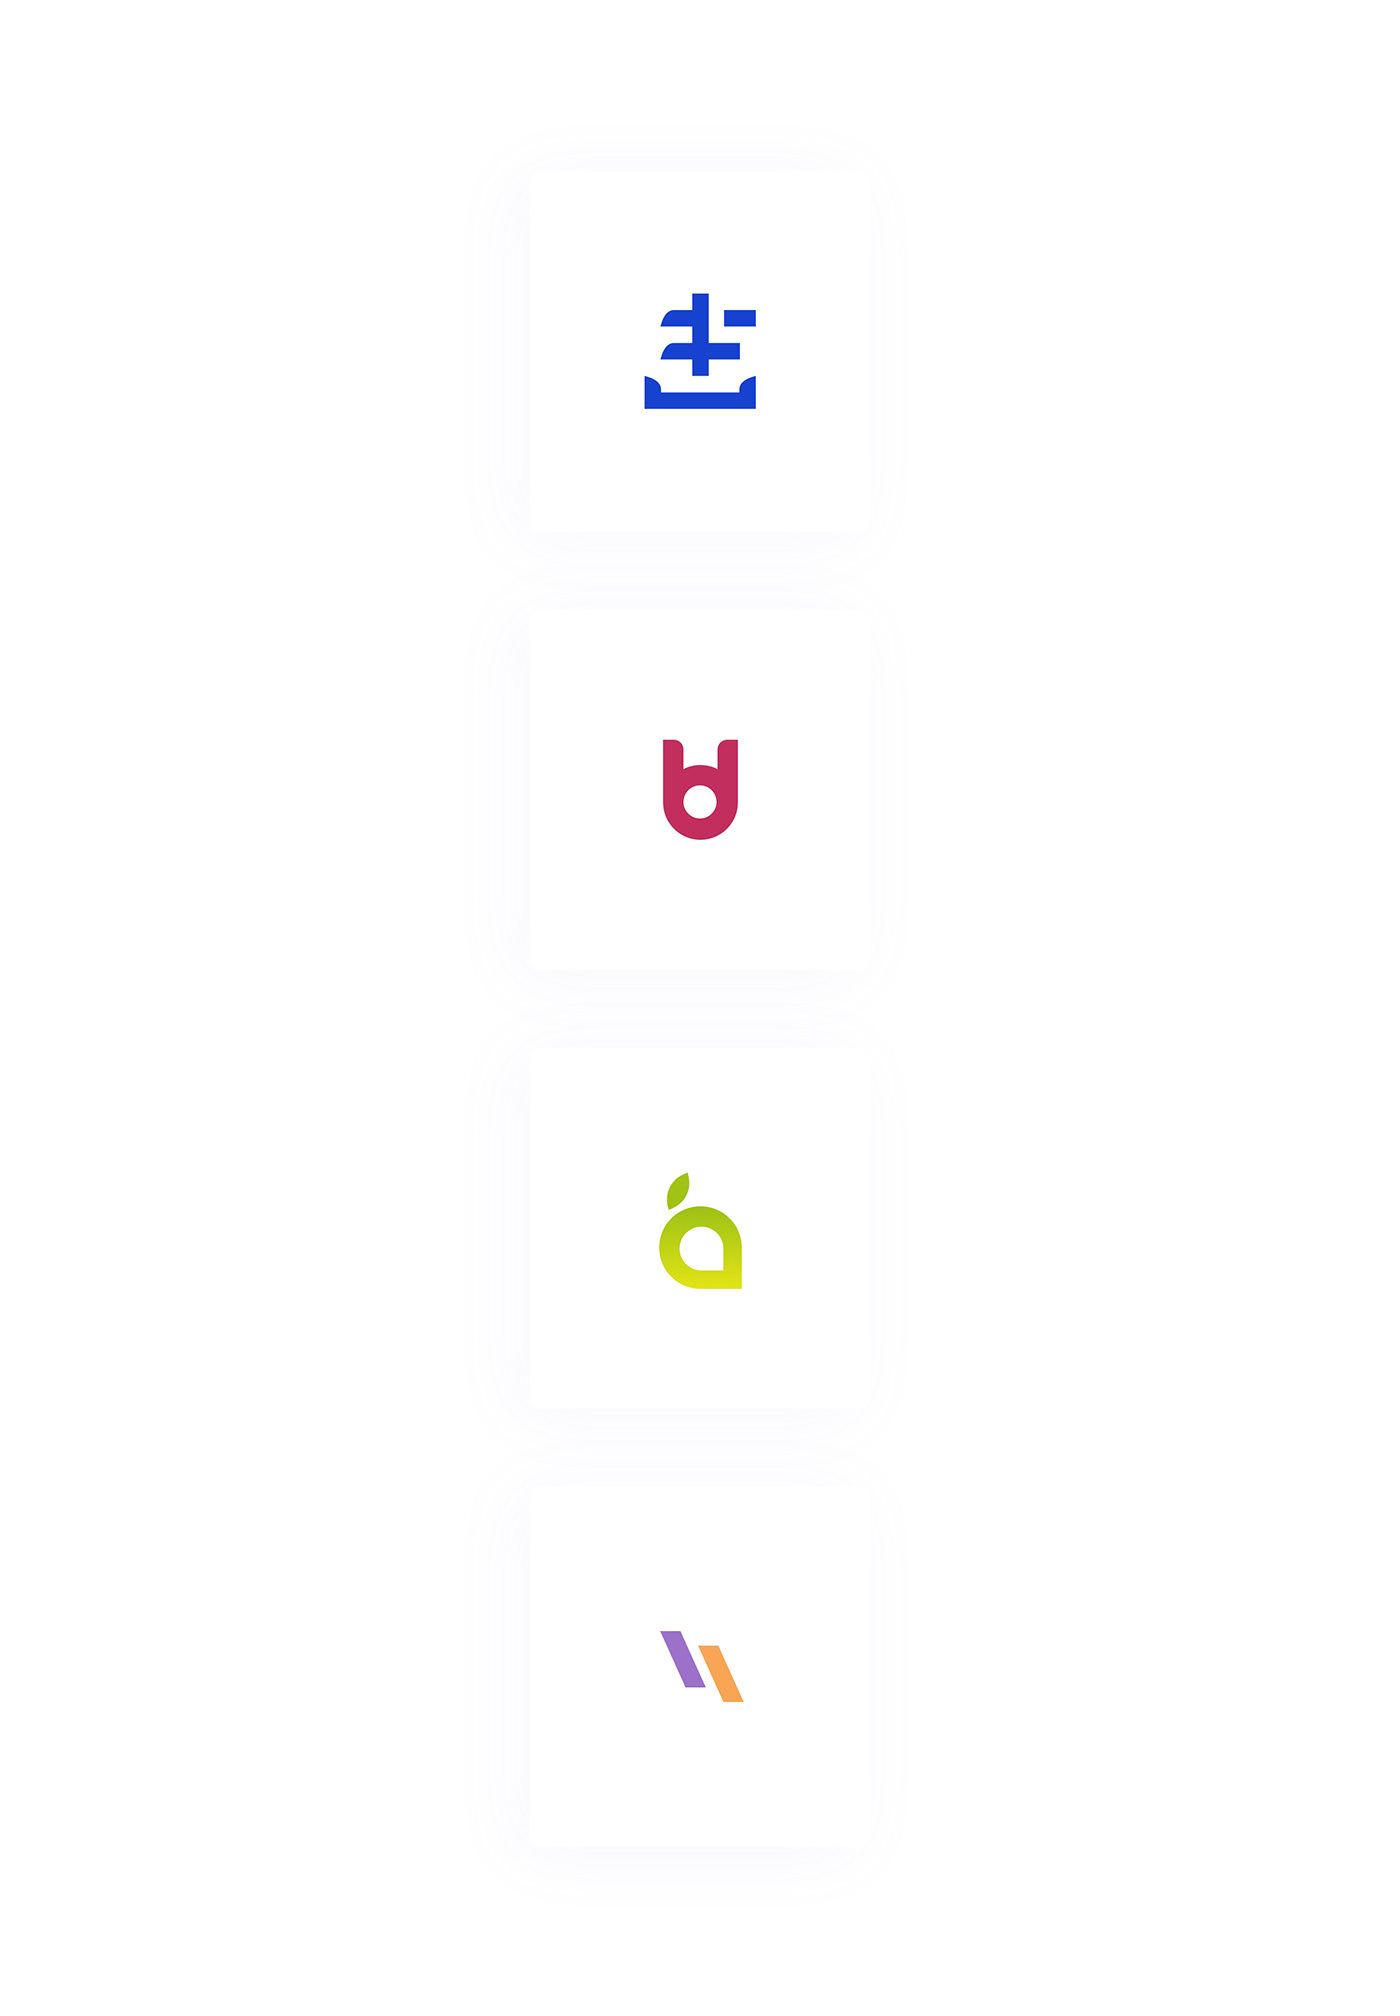 logos brand free logos identity free UI Web mobile sketchapp logos